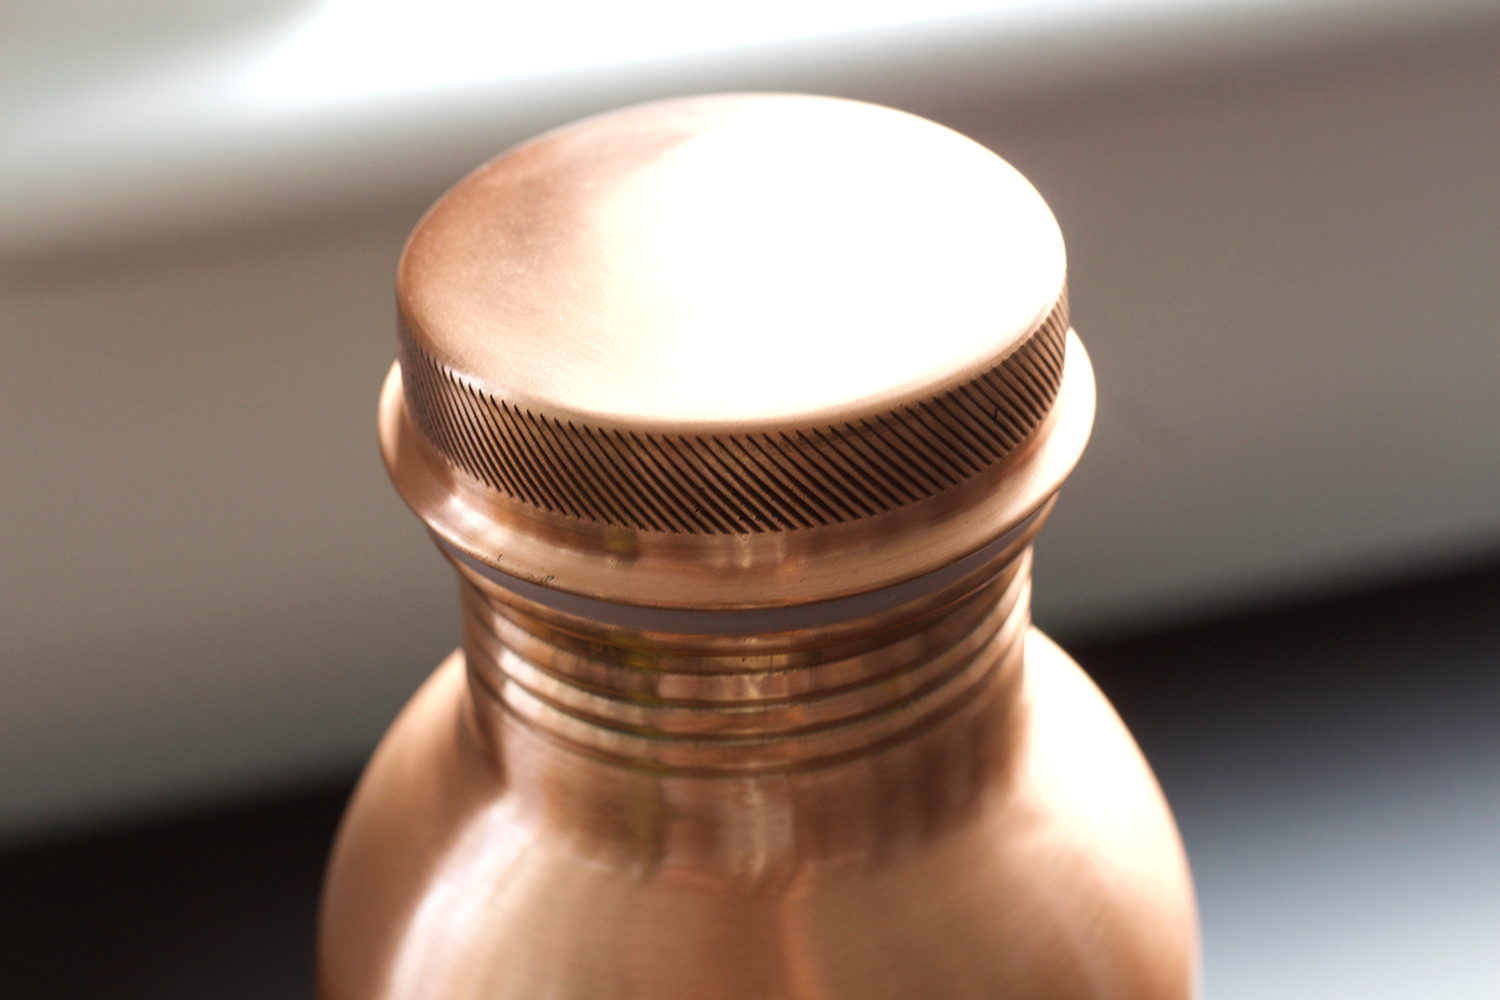 Kosdeg -  Copper Water bottle - Smooth - 34 Oz/ 1L